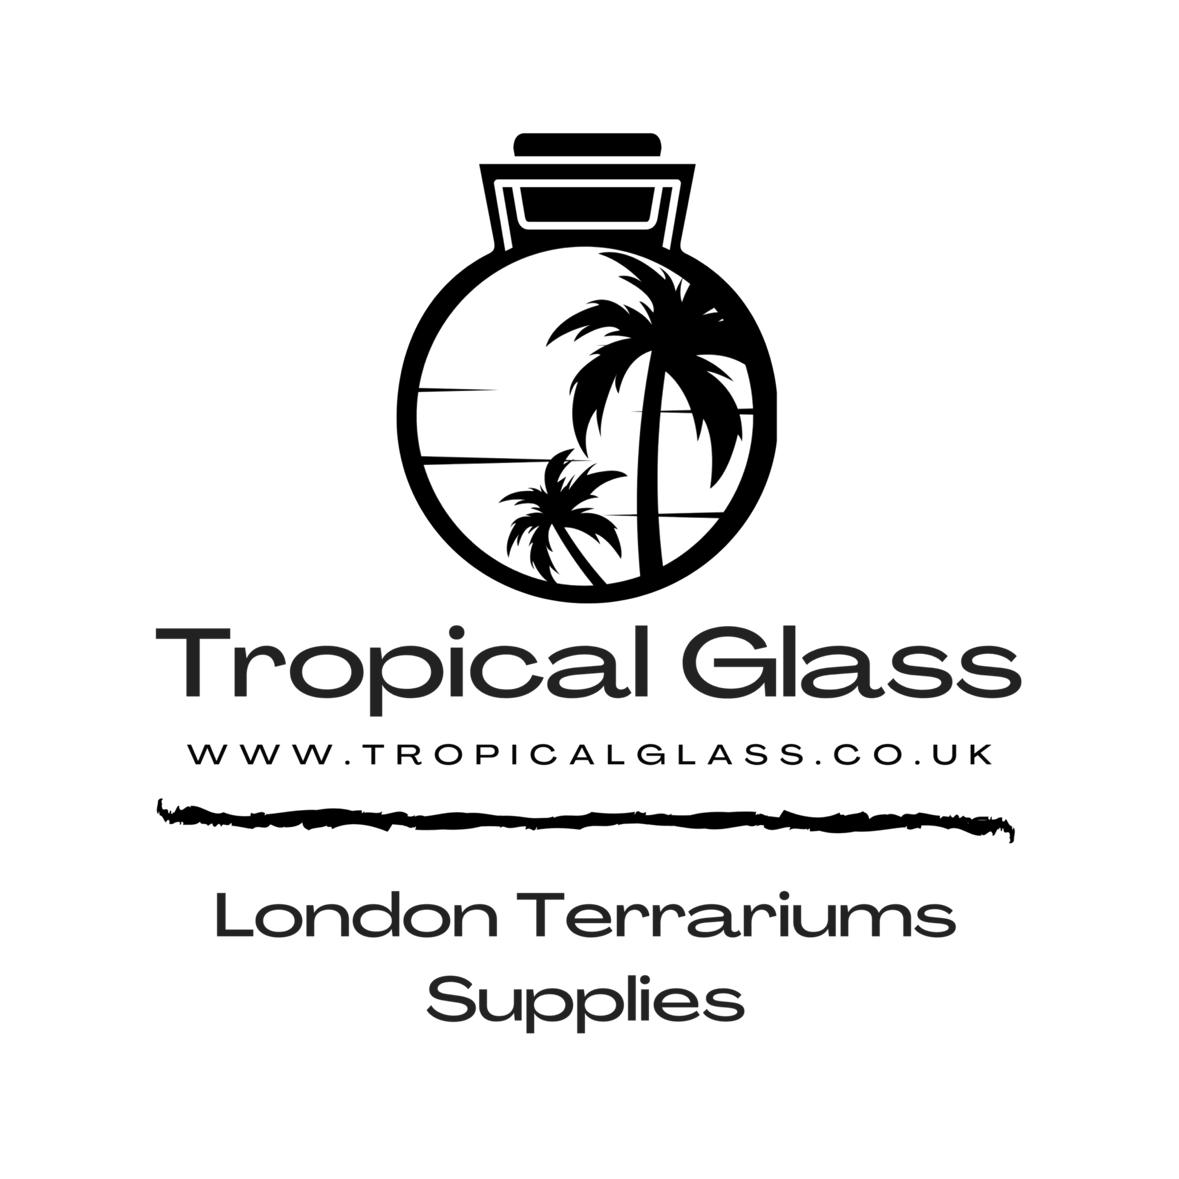 Tropicalglass